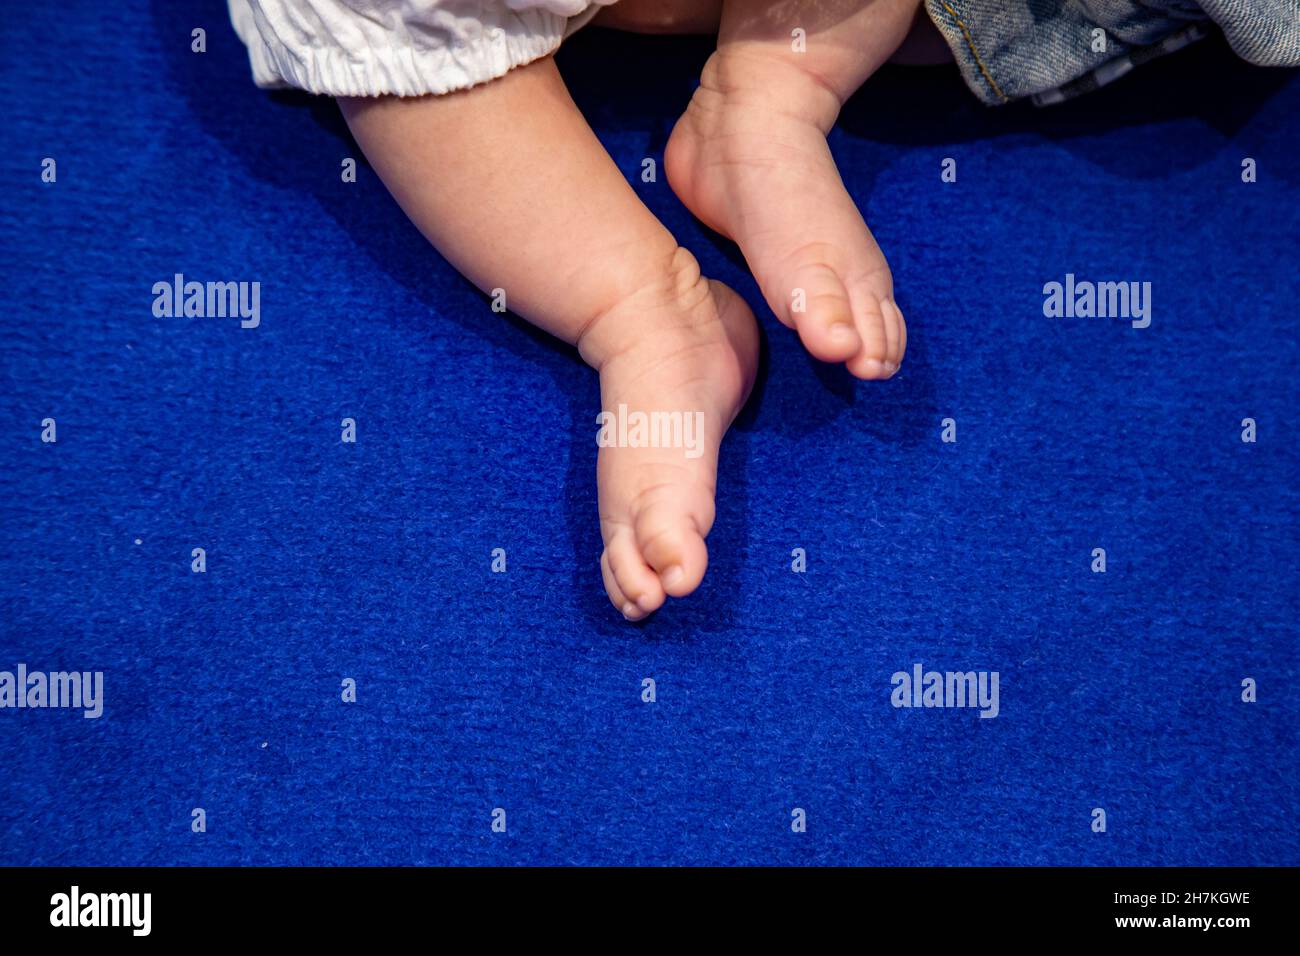 pie de 0 años sobre una alfombra azul Foto de stock